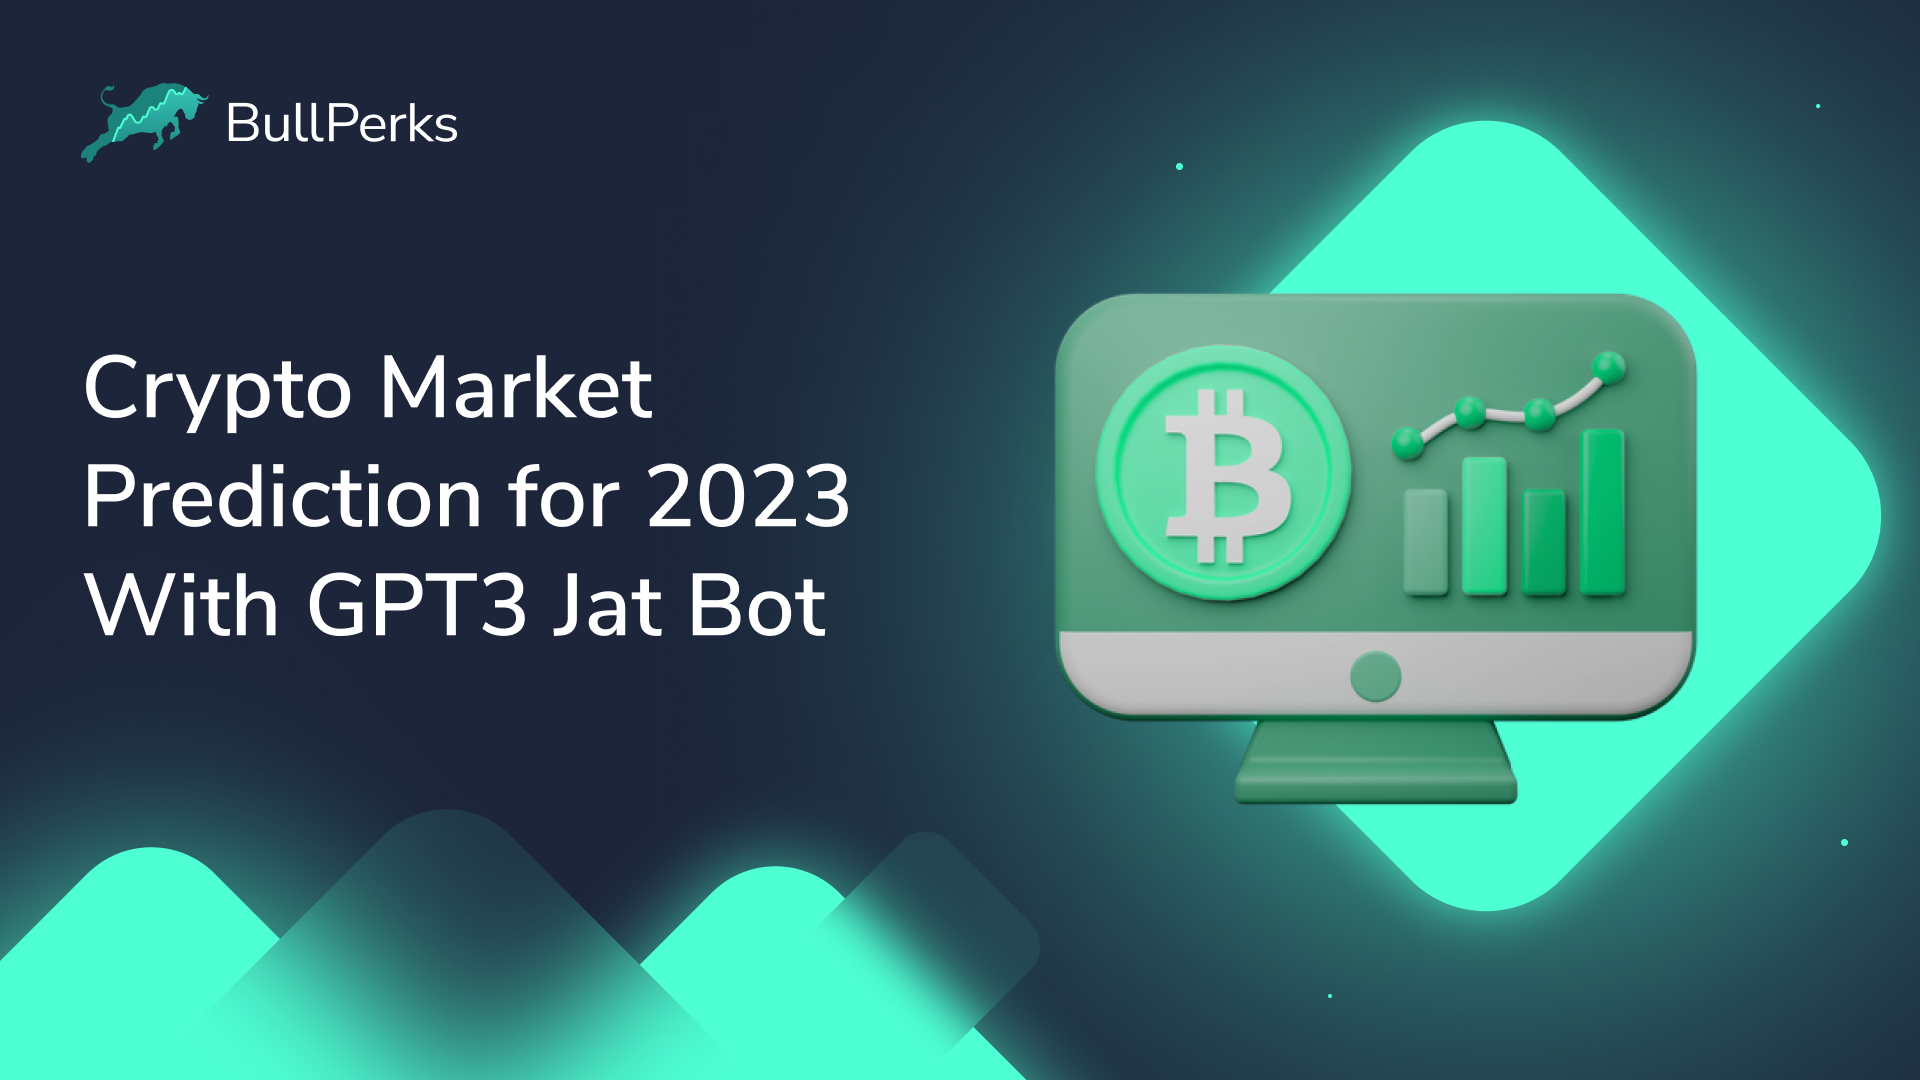 GPT 3 Chatbot ile 2023 Kripto Piyasası Tahmini 1 BullPerks